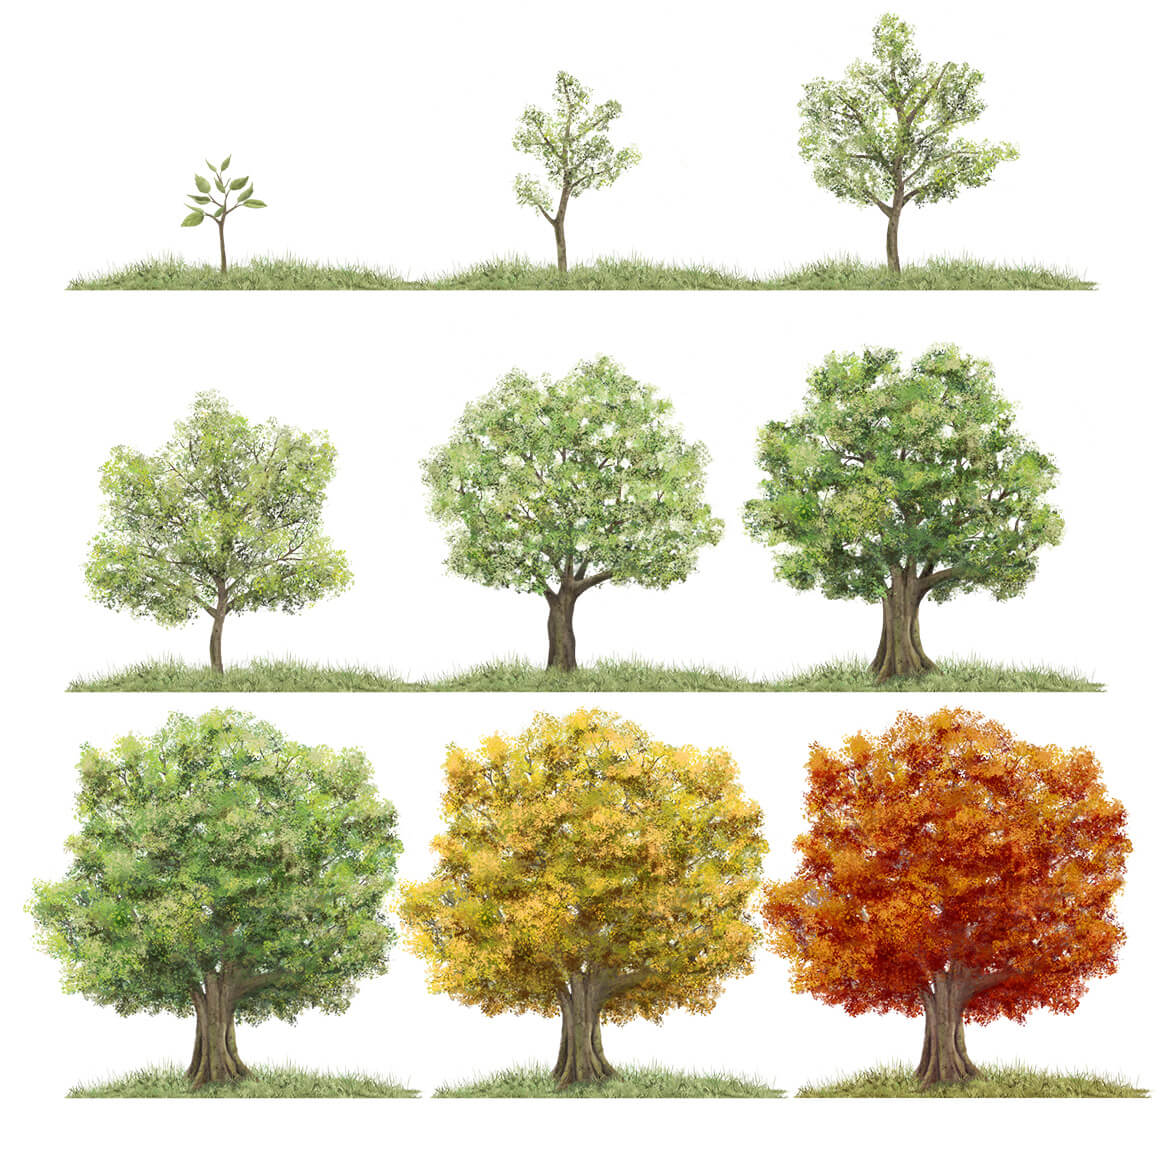 Illustration eines Baums in unterschiedlichen Entwicklungsstadien